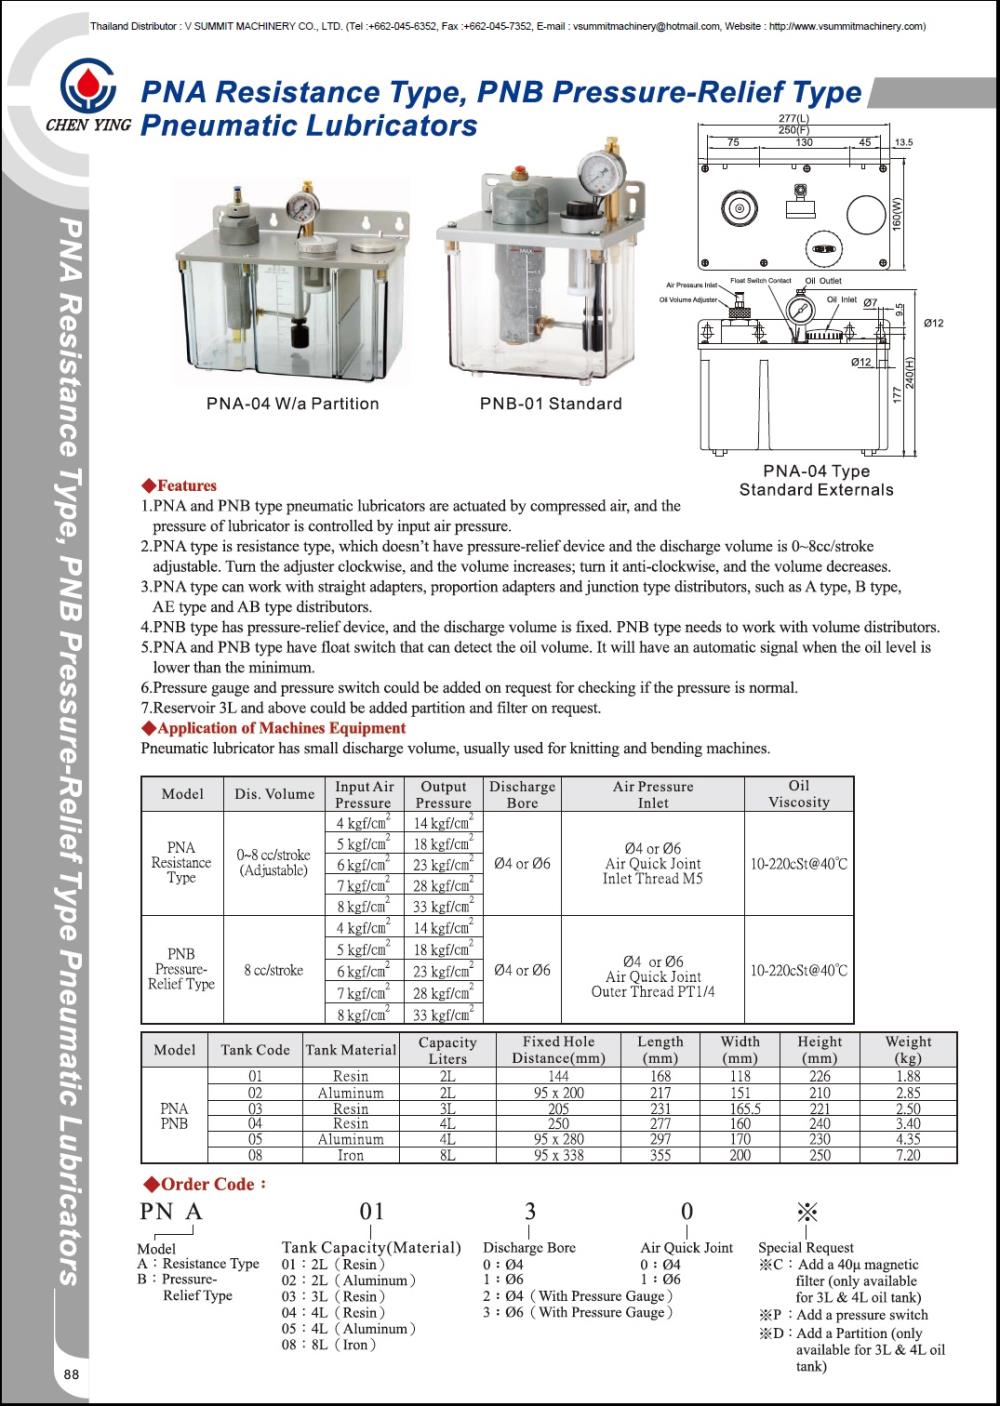 PNA Resistance Type Pneumatic Lubricators, ปั๊มน้ำมันใช้ลมขับเคลื่อน(ไม่ใช้ไฟฟ้า), เครื่องจ่ายน้ำมันใช้ลมขับเคลื่อน(ไม่ใช้ไฟฟ้า), กาน้ำมันใช้ลมขับเคลื่อน(ไม่ใช้ไฟฟ้า)